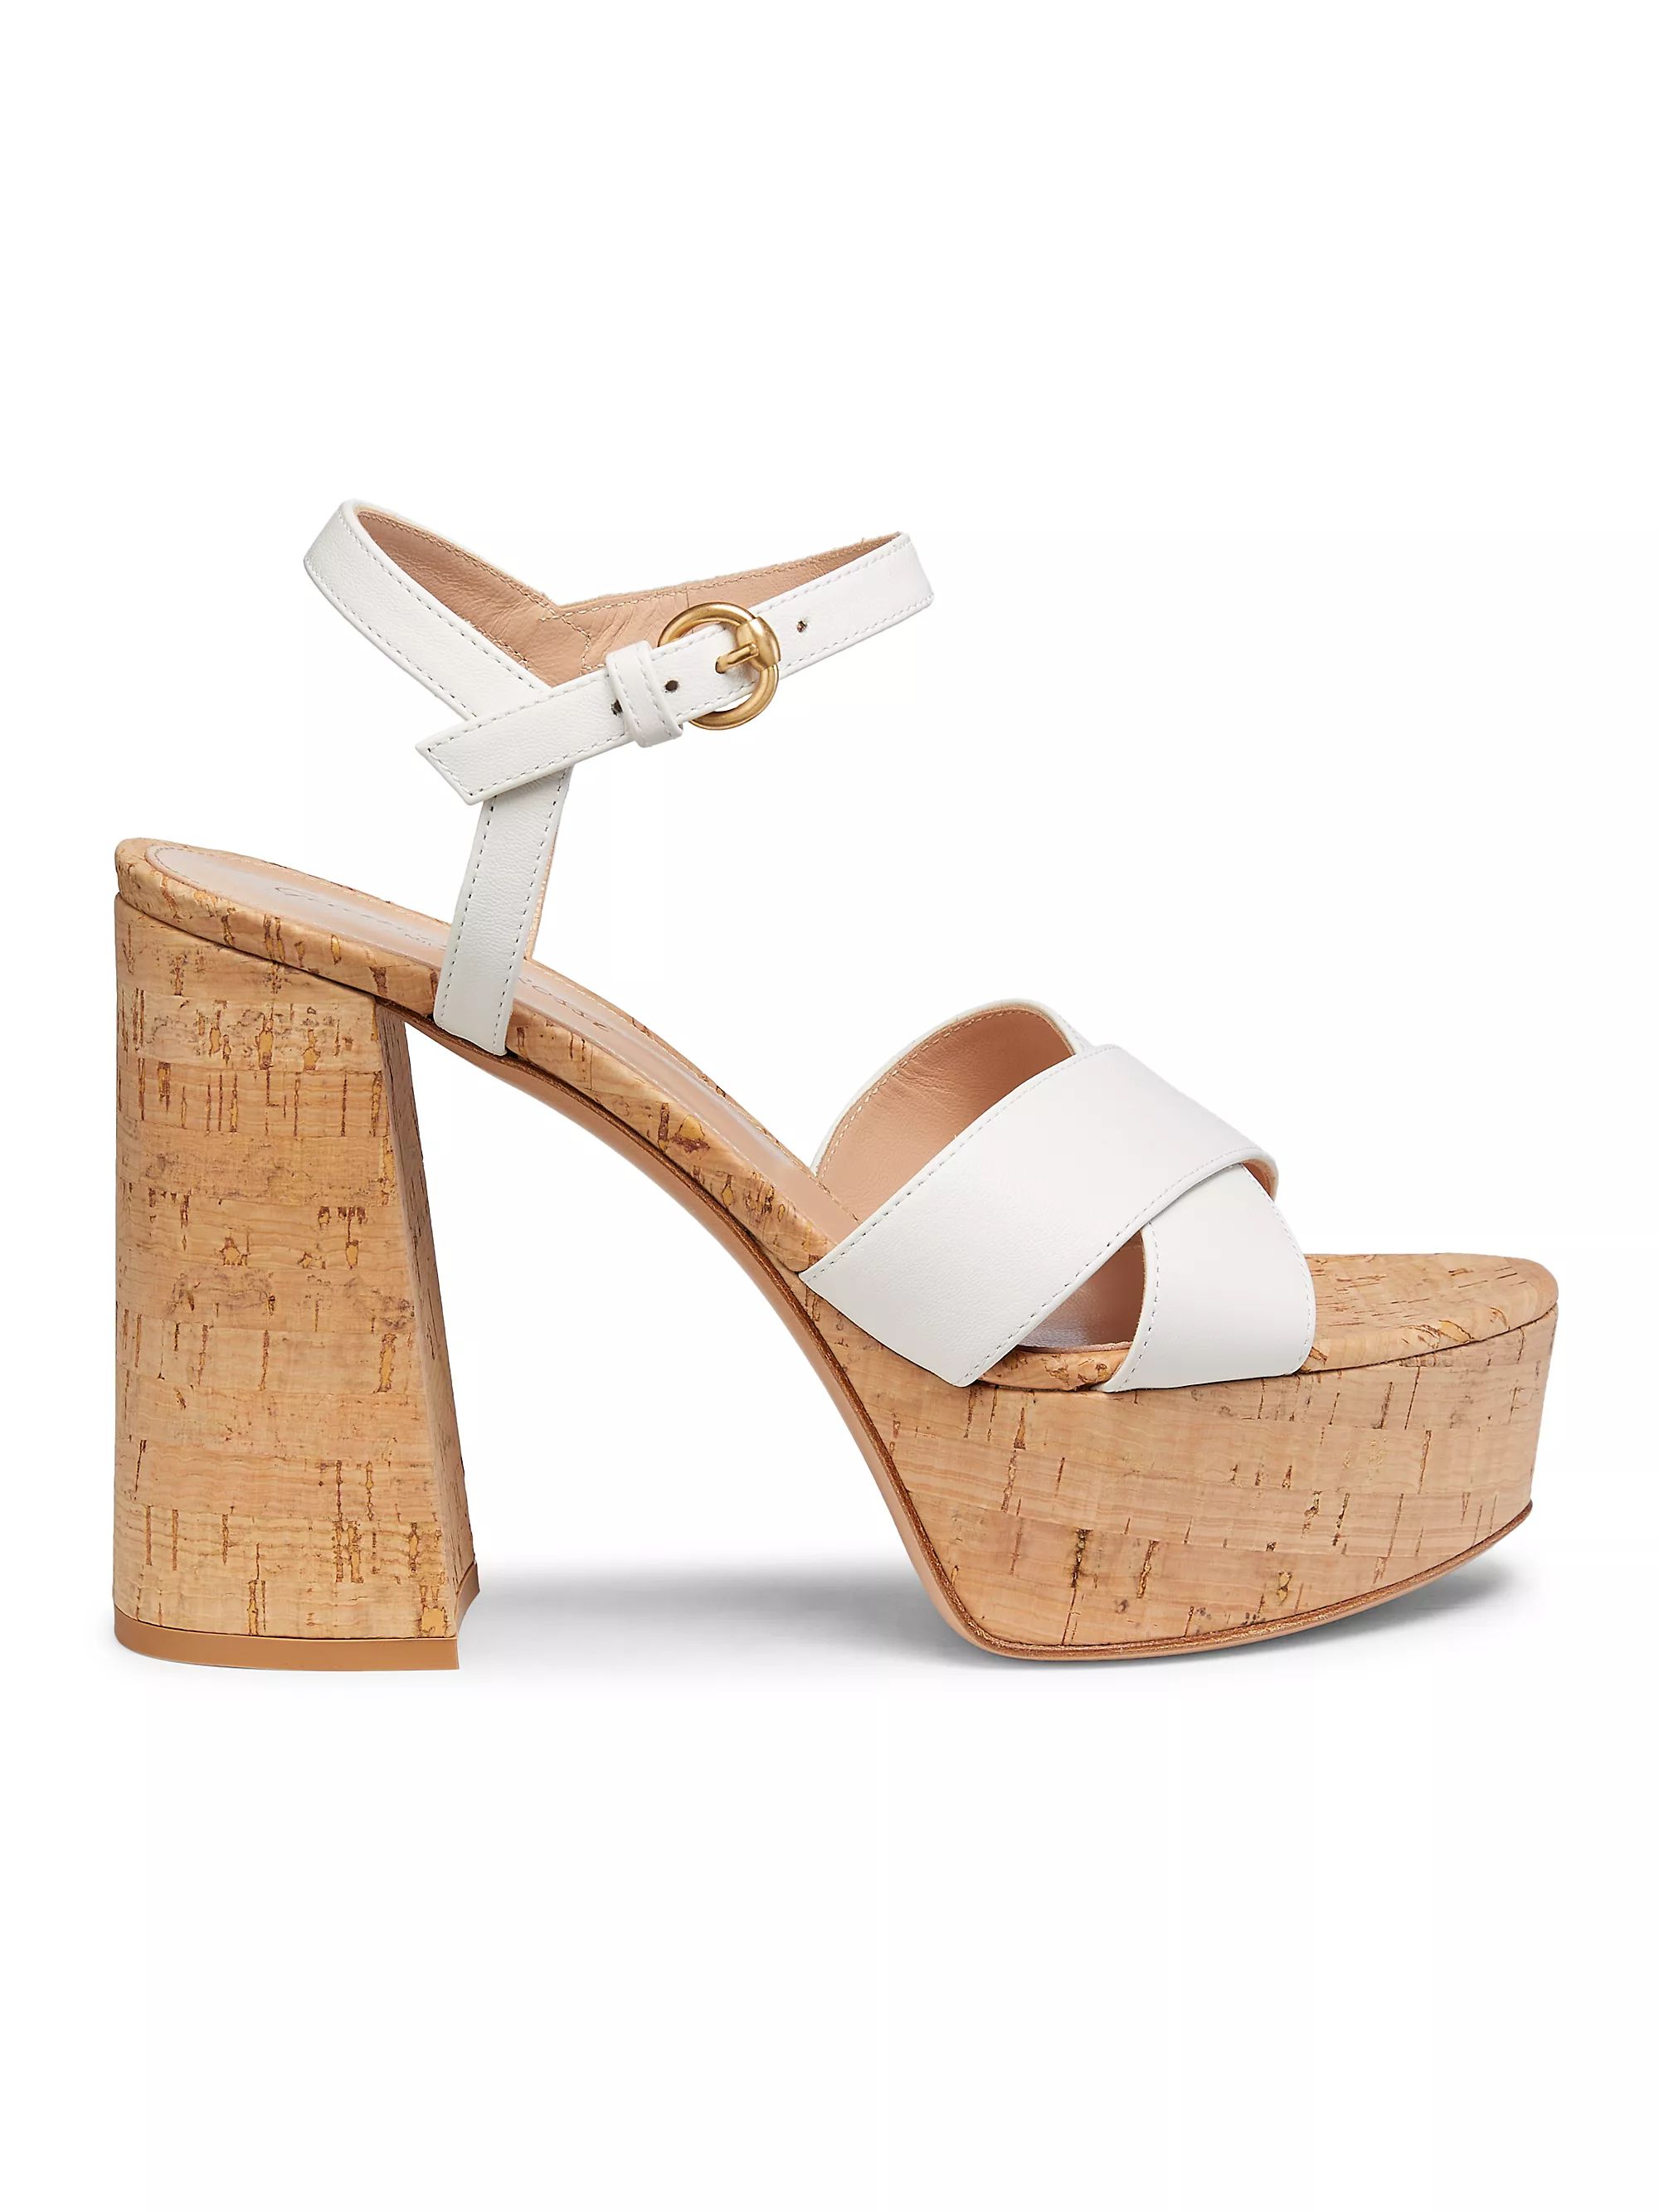 Bebe Leather Platform Sandals | Saks Fifth Avenue